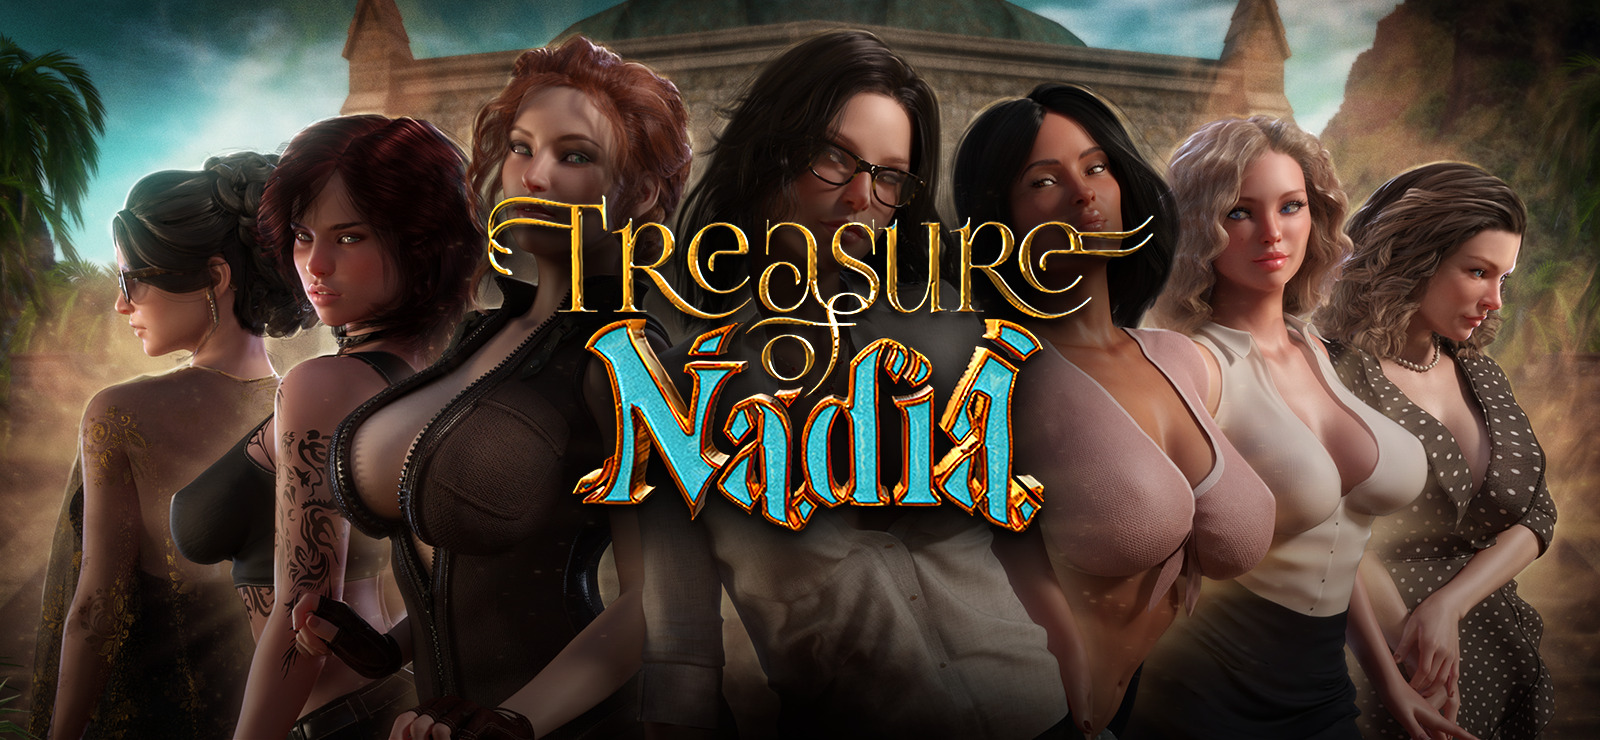 Treasure of nadia review